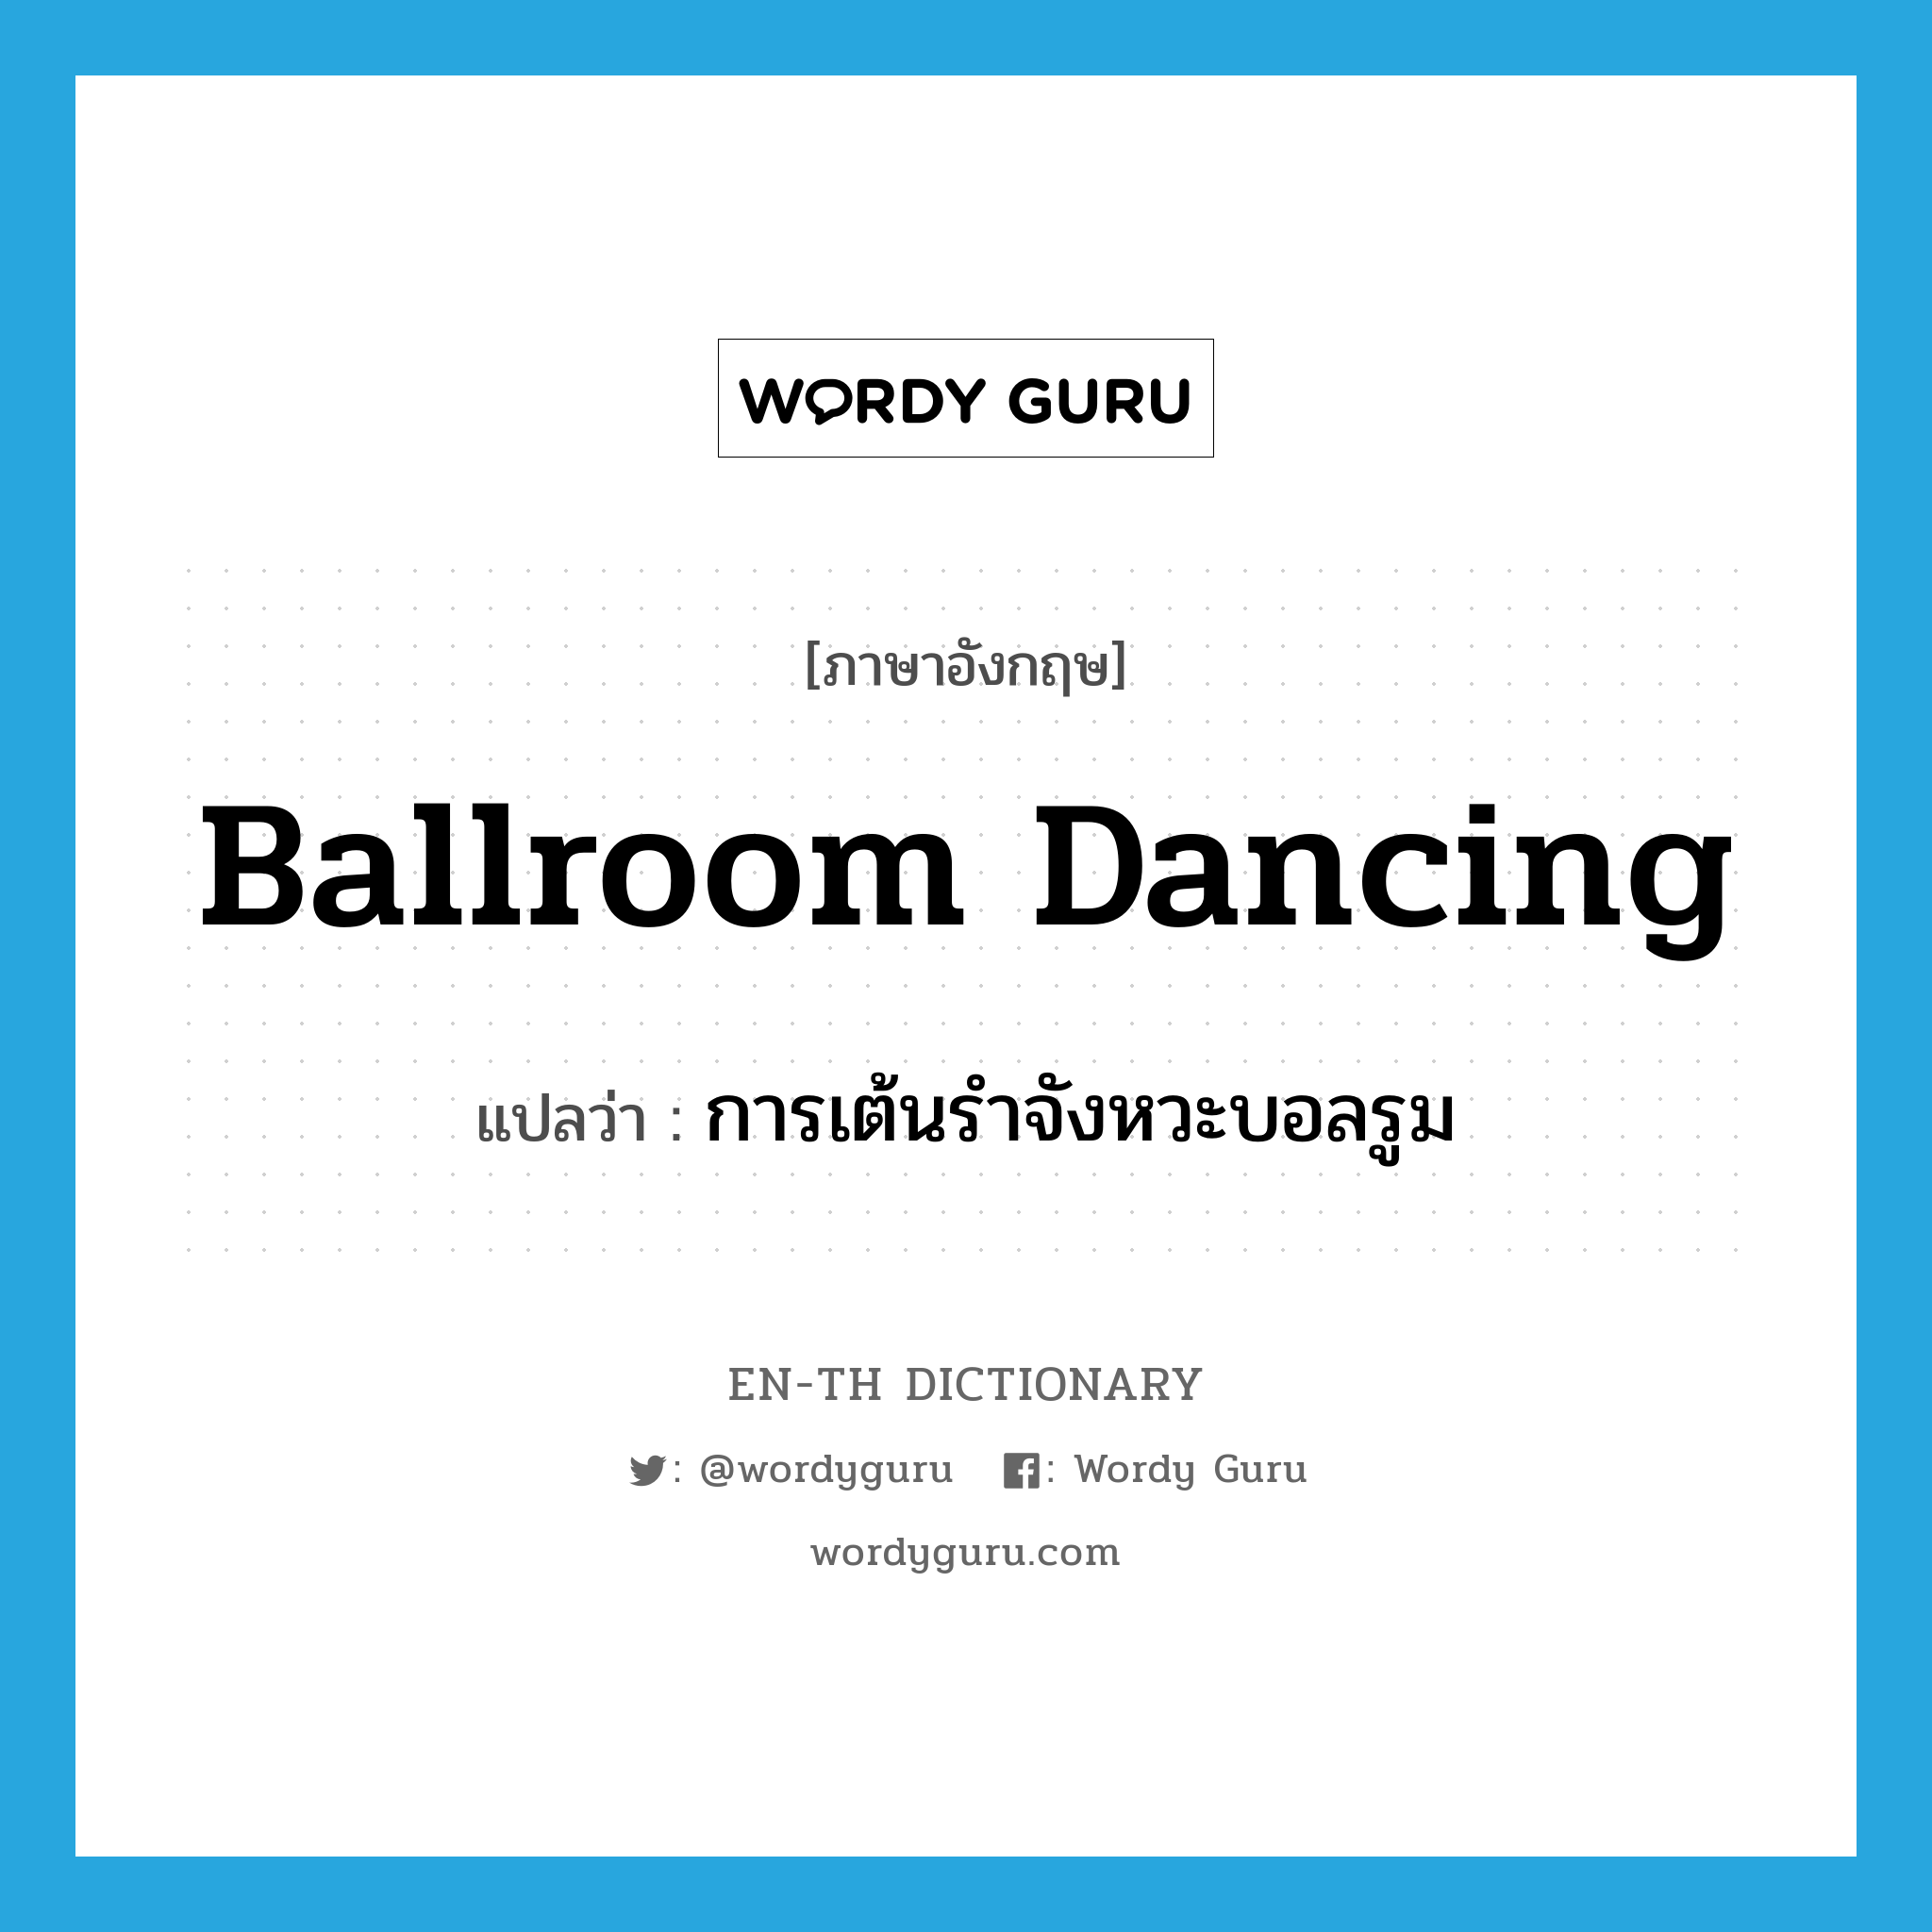 ballroom dancing แปลว่า?, คำศัพท์ภาษาอังกฤษ ballroom dancing แปลว่า การเต้นรำจังหวะบอลรูม ประเภท N หมวด N